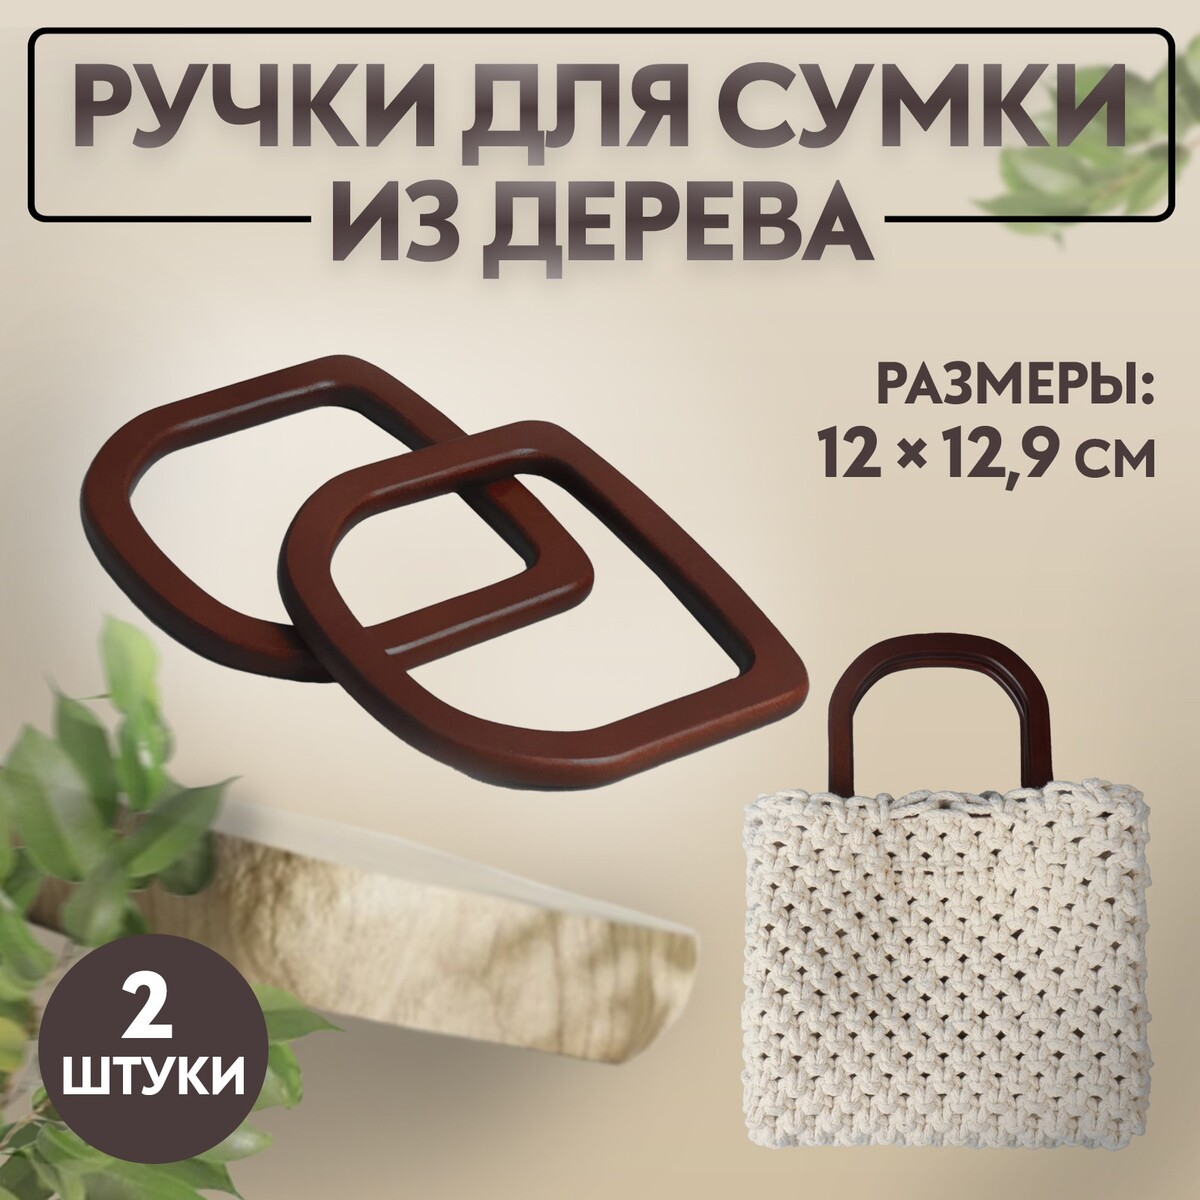 Ручки для сумки деревянные, 12 × 12,9 см, 2 шт, цвет коричневый ручки для сумки деревянные 12 × 8 5 см 2 шт темно коричневый